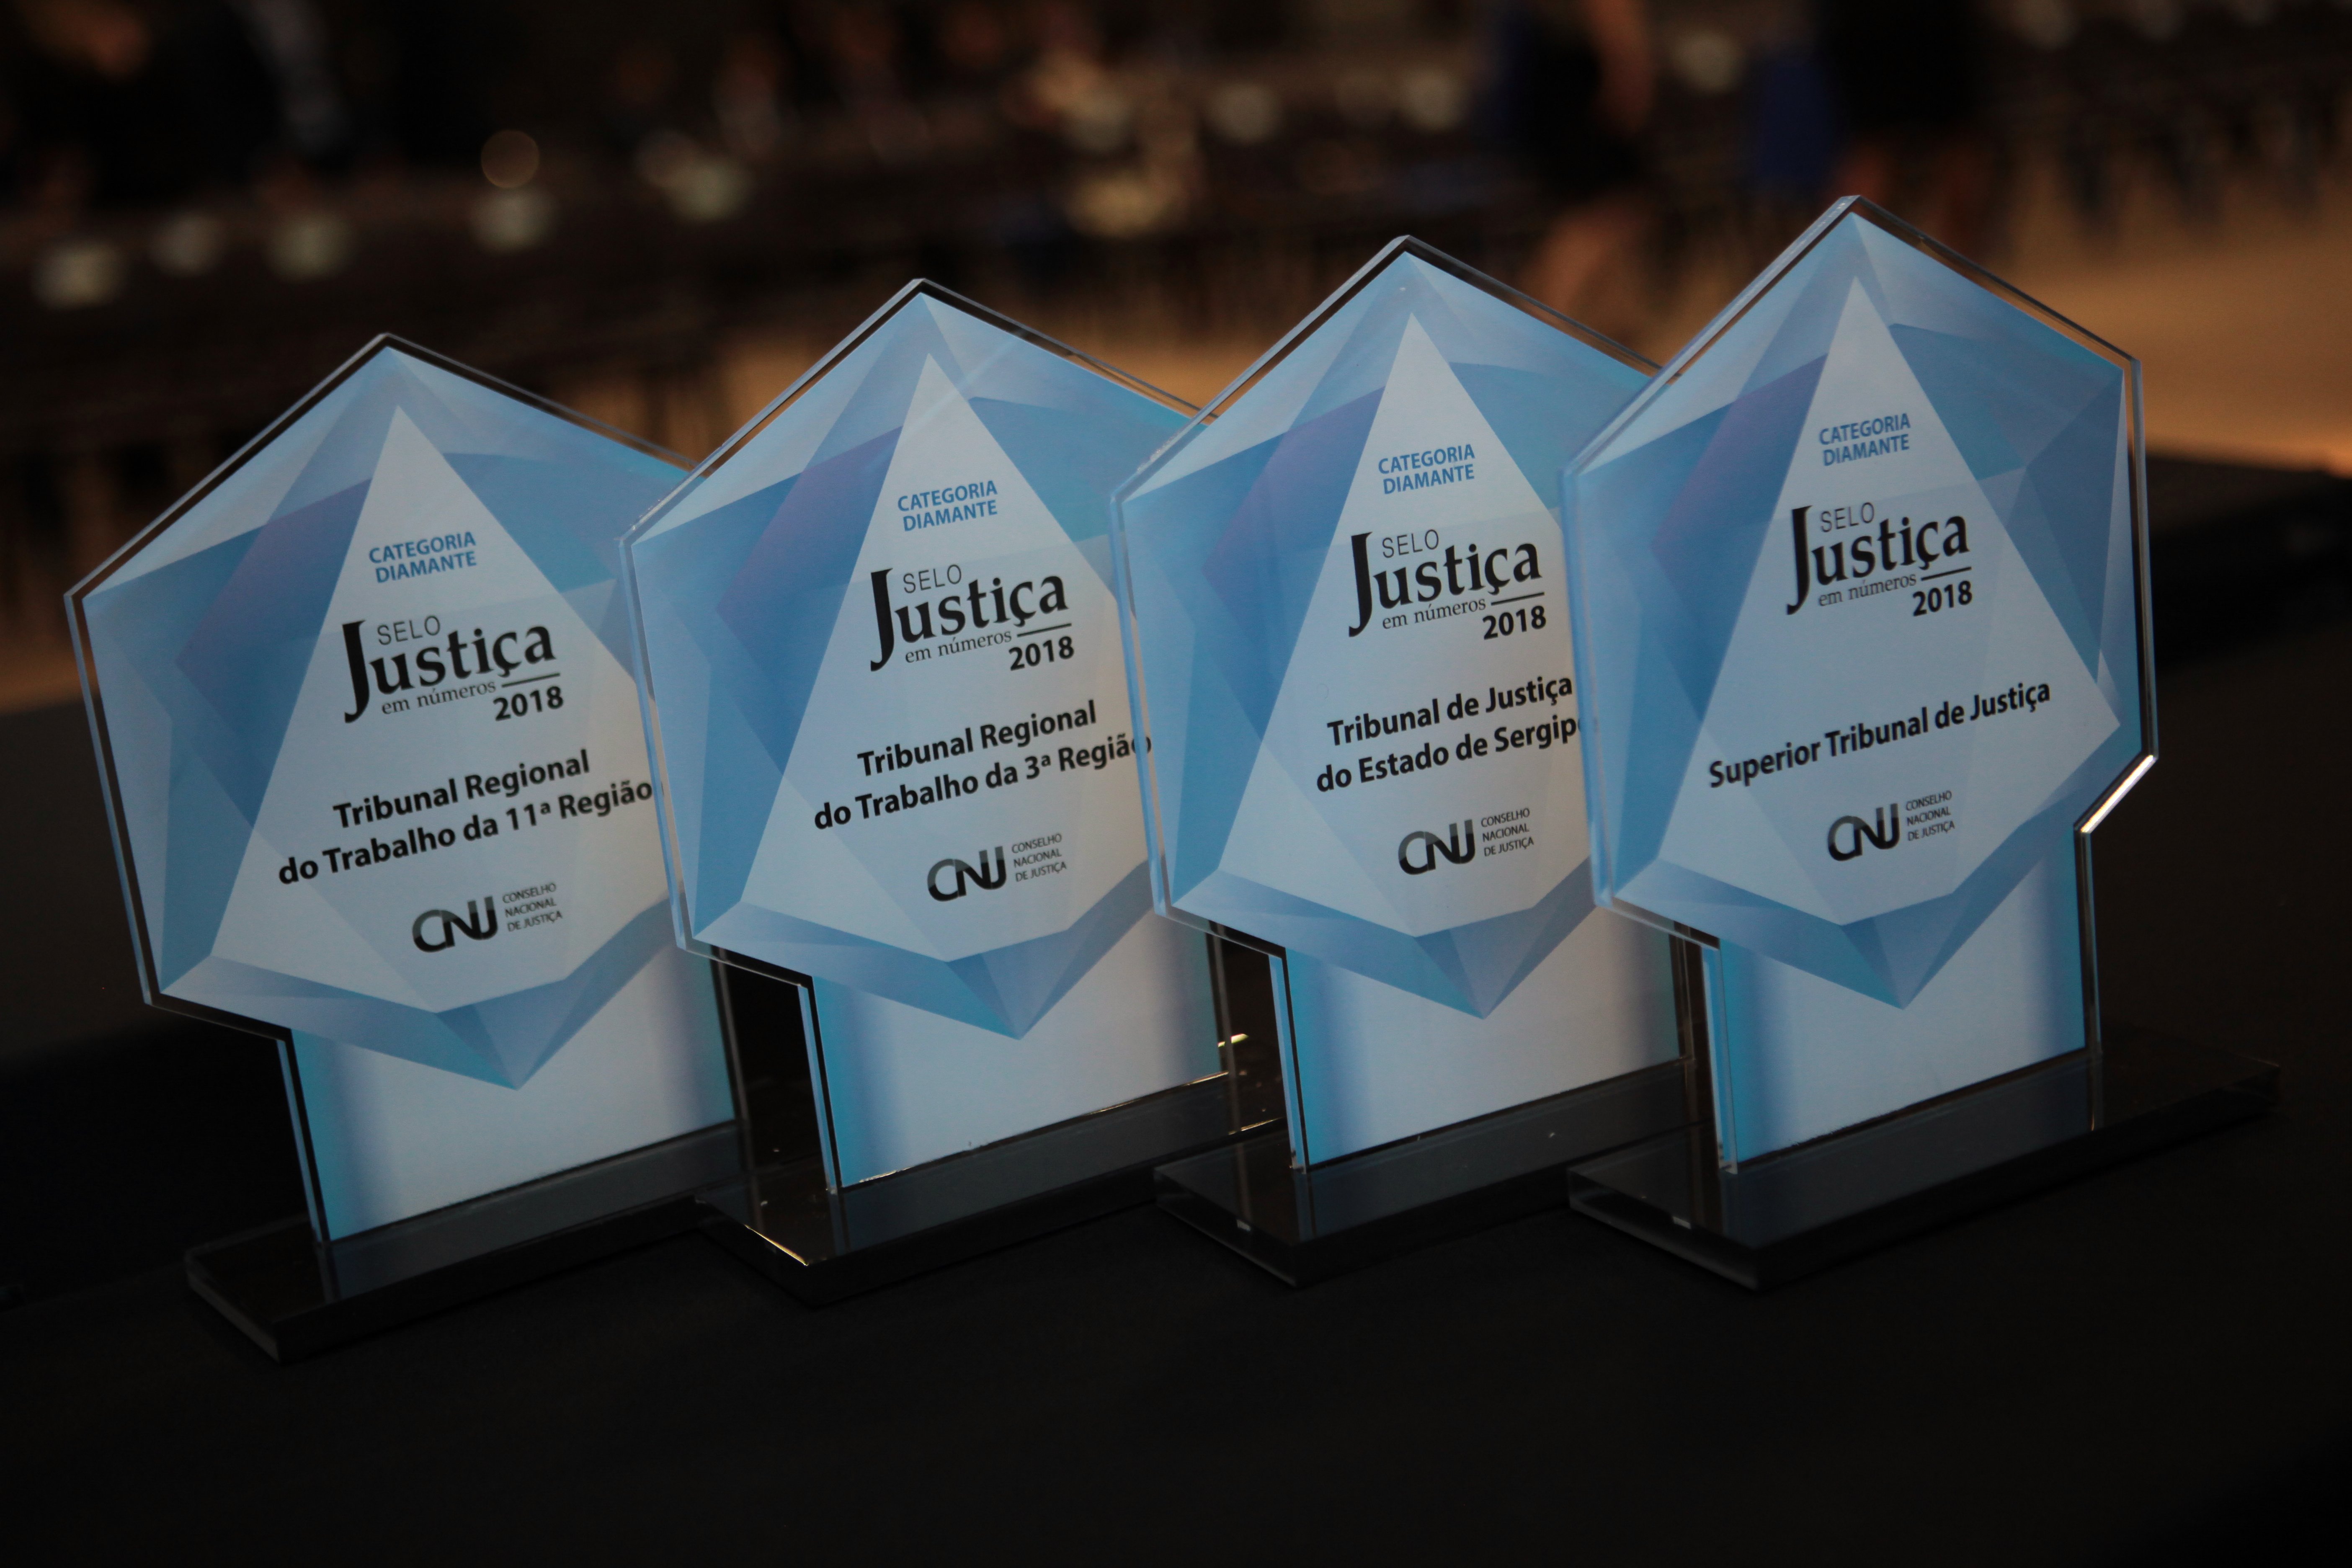 INSTITUCIONAL: TRF1 é premiado com Selo Bronze do Justiça em Números 2018